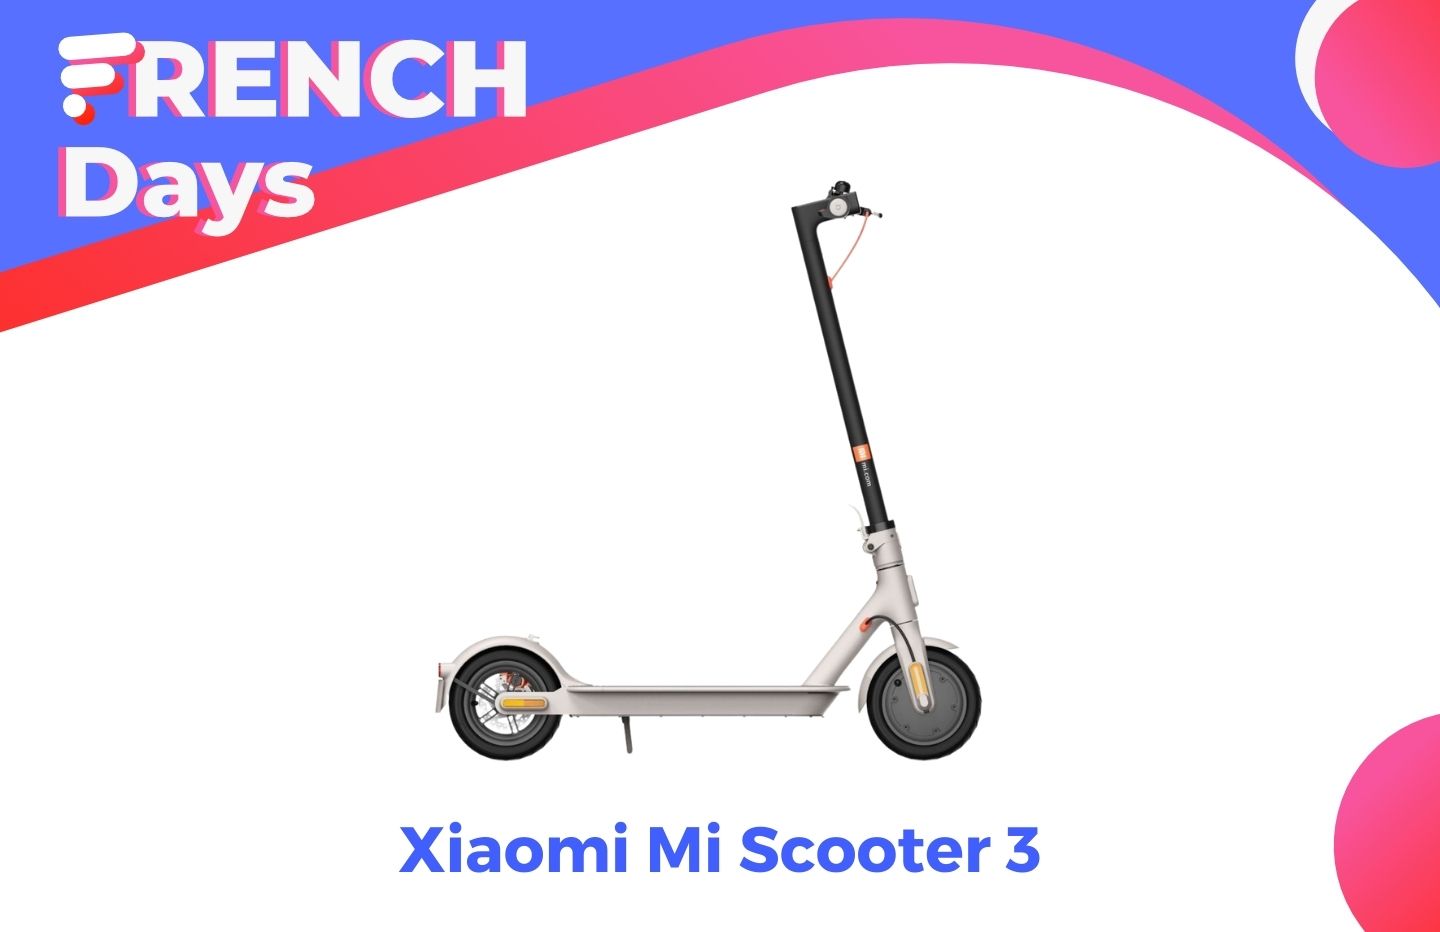 Le prix des trottinettes Xiaomi ont augmenté, sauf pour la Mi Scooter 3  grâce à cette offre